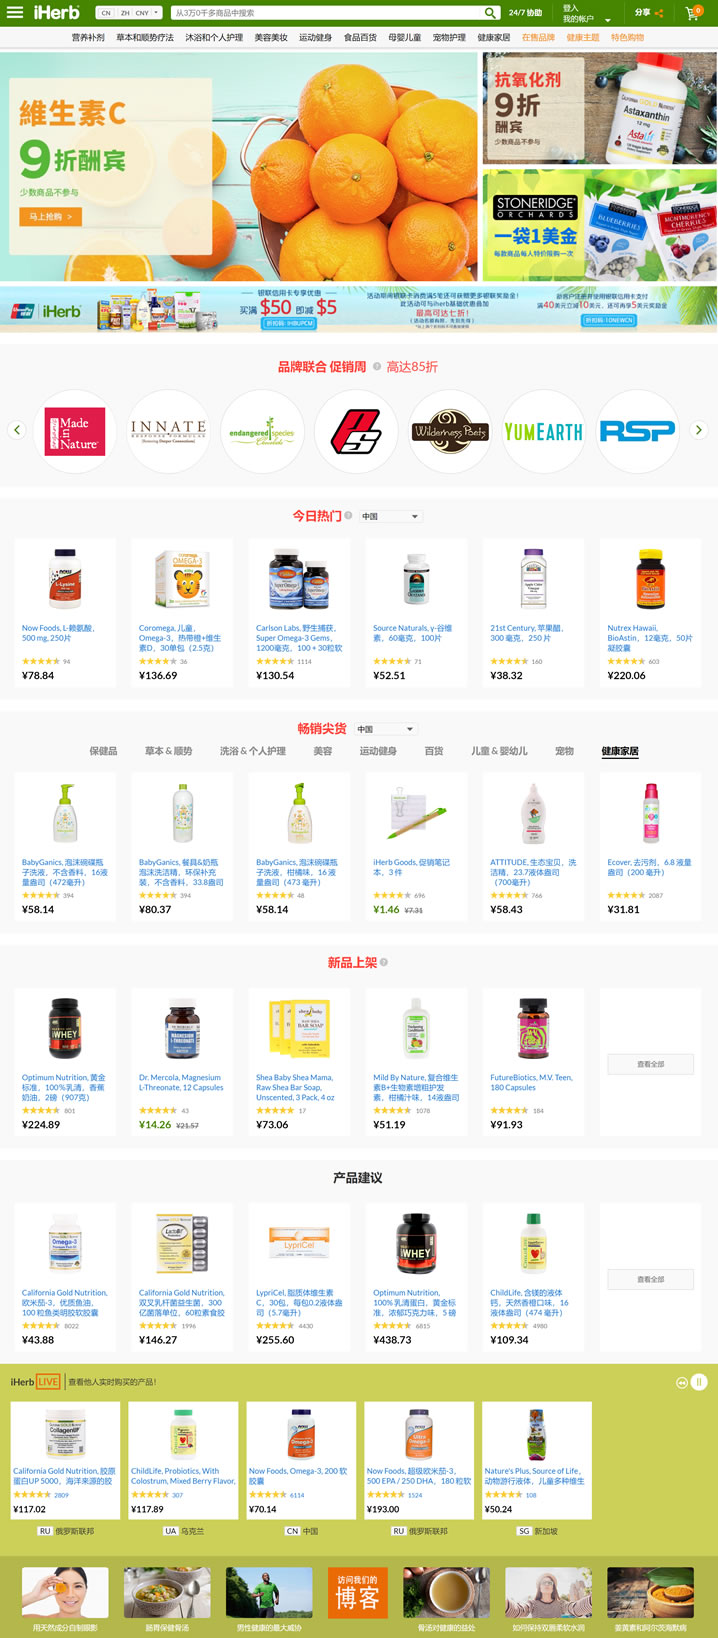 iHerb中文官网：维生素、保健品和健康产品